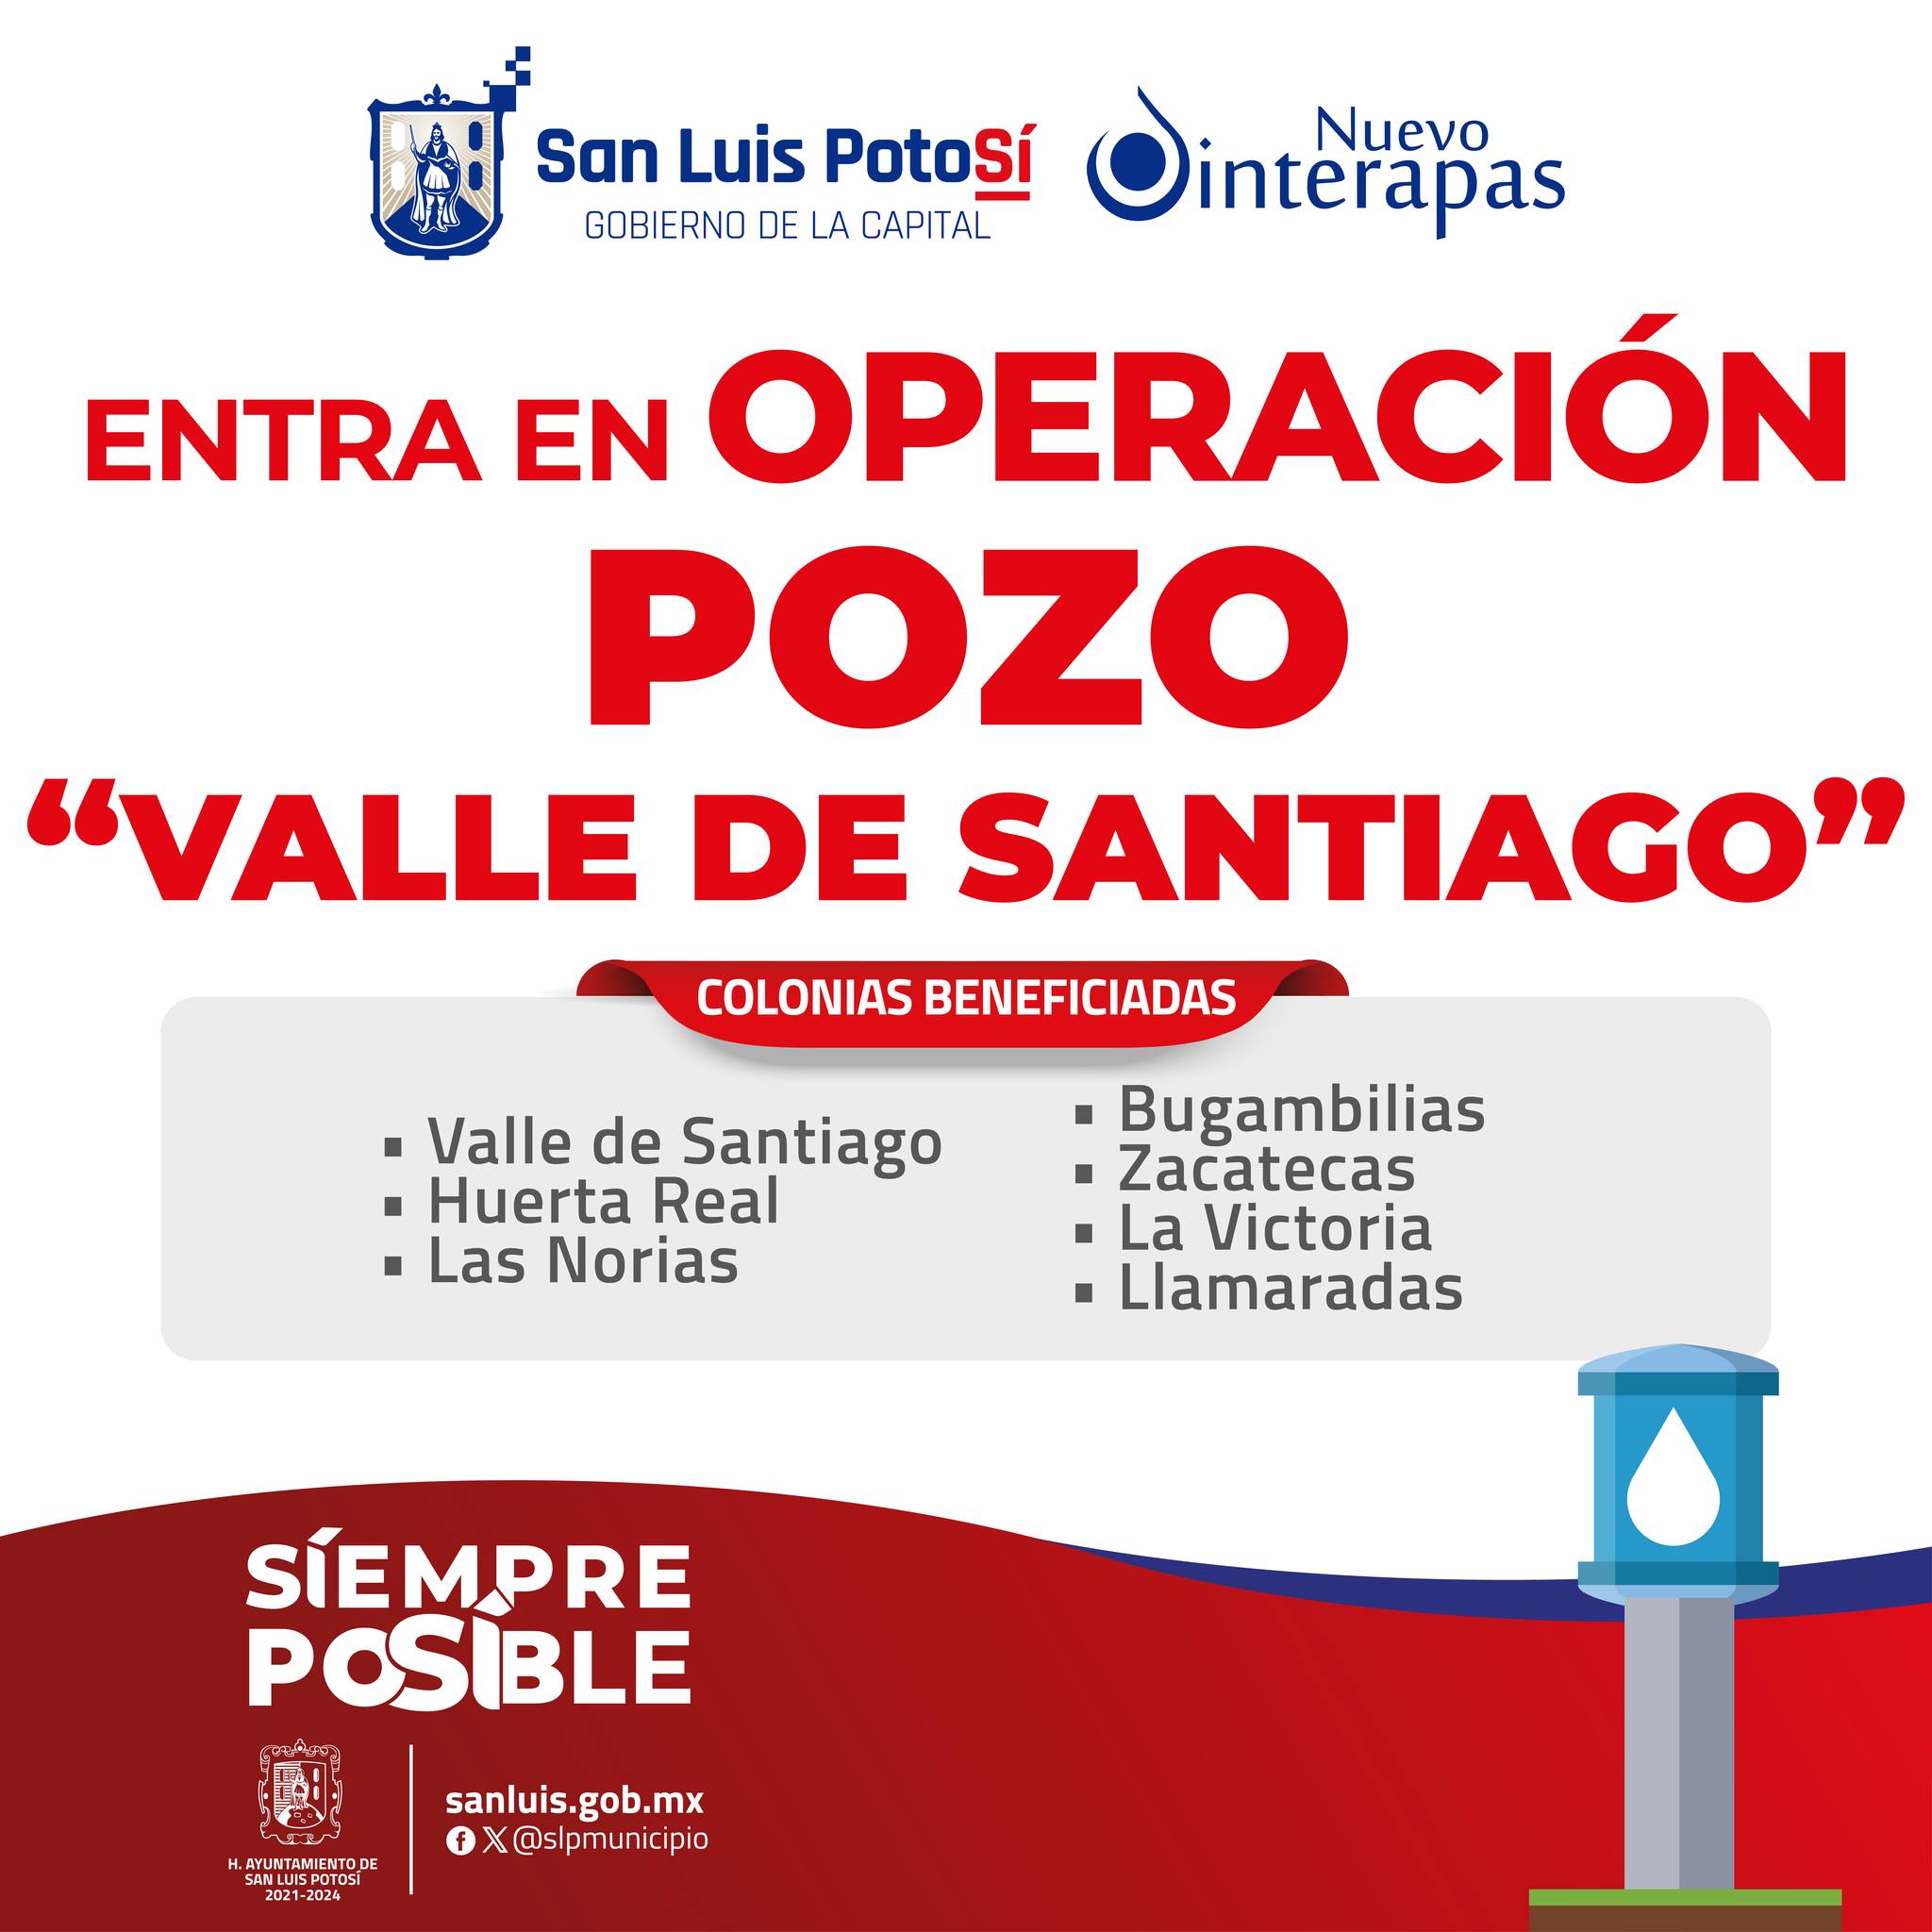 El Nuevo INTERAPAS pone en operación el pozo “Valle de Santiago”.